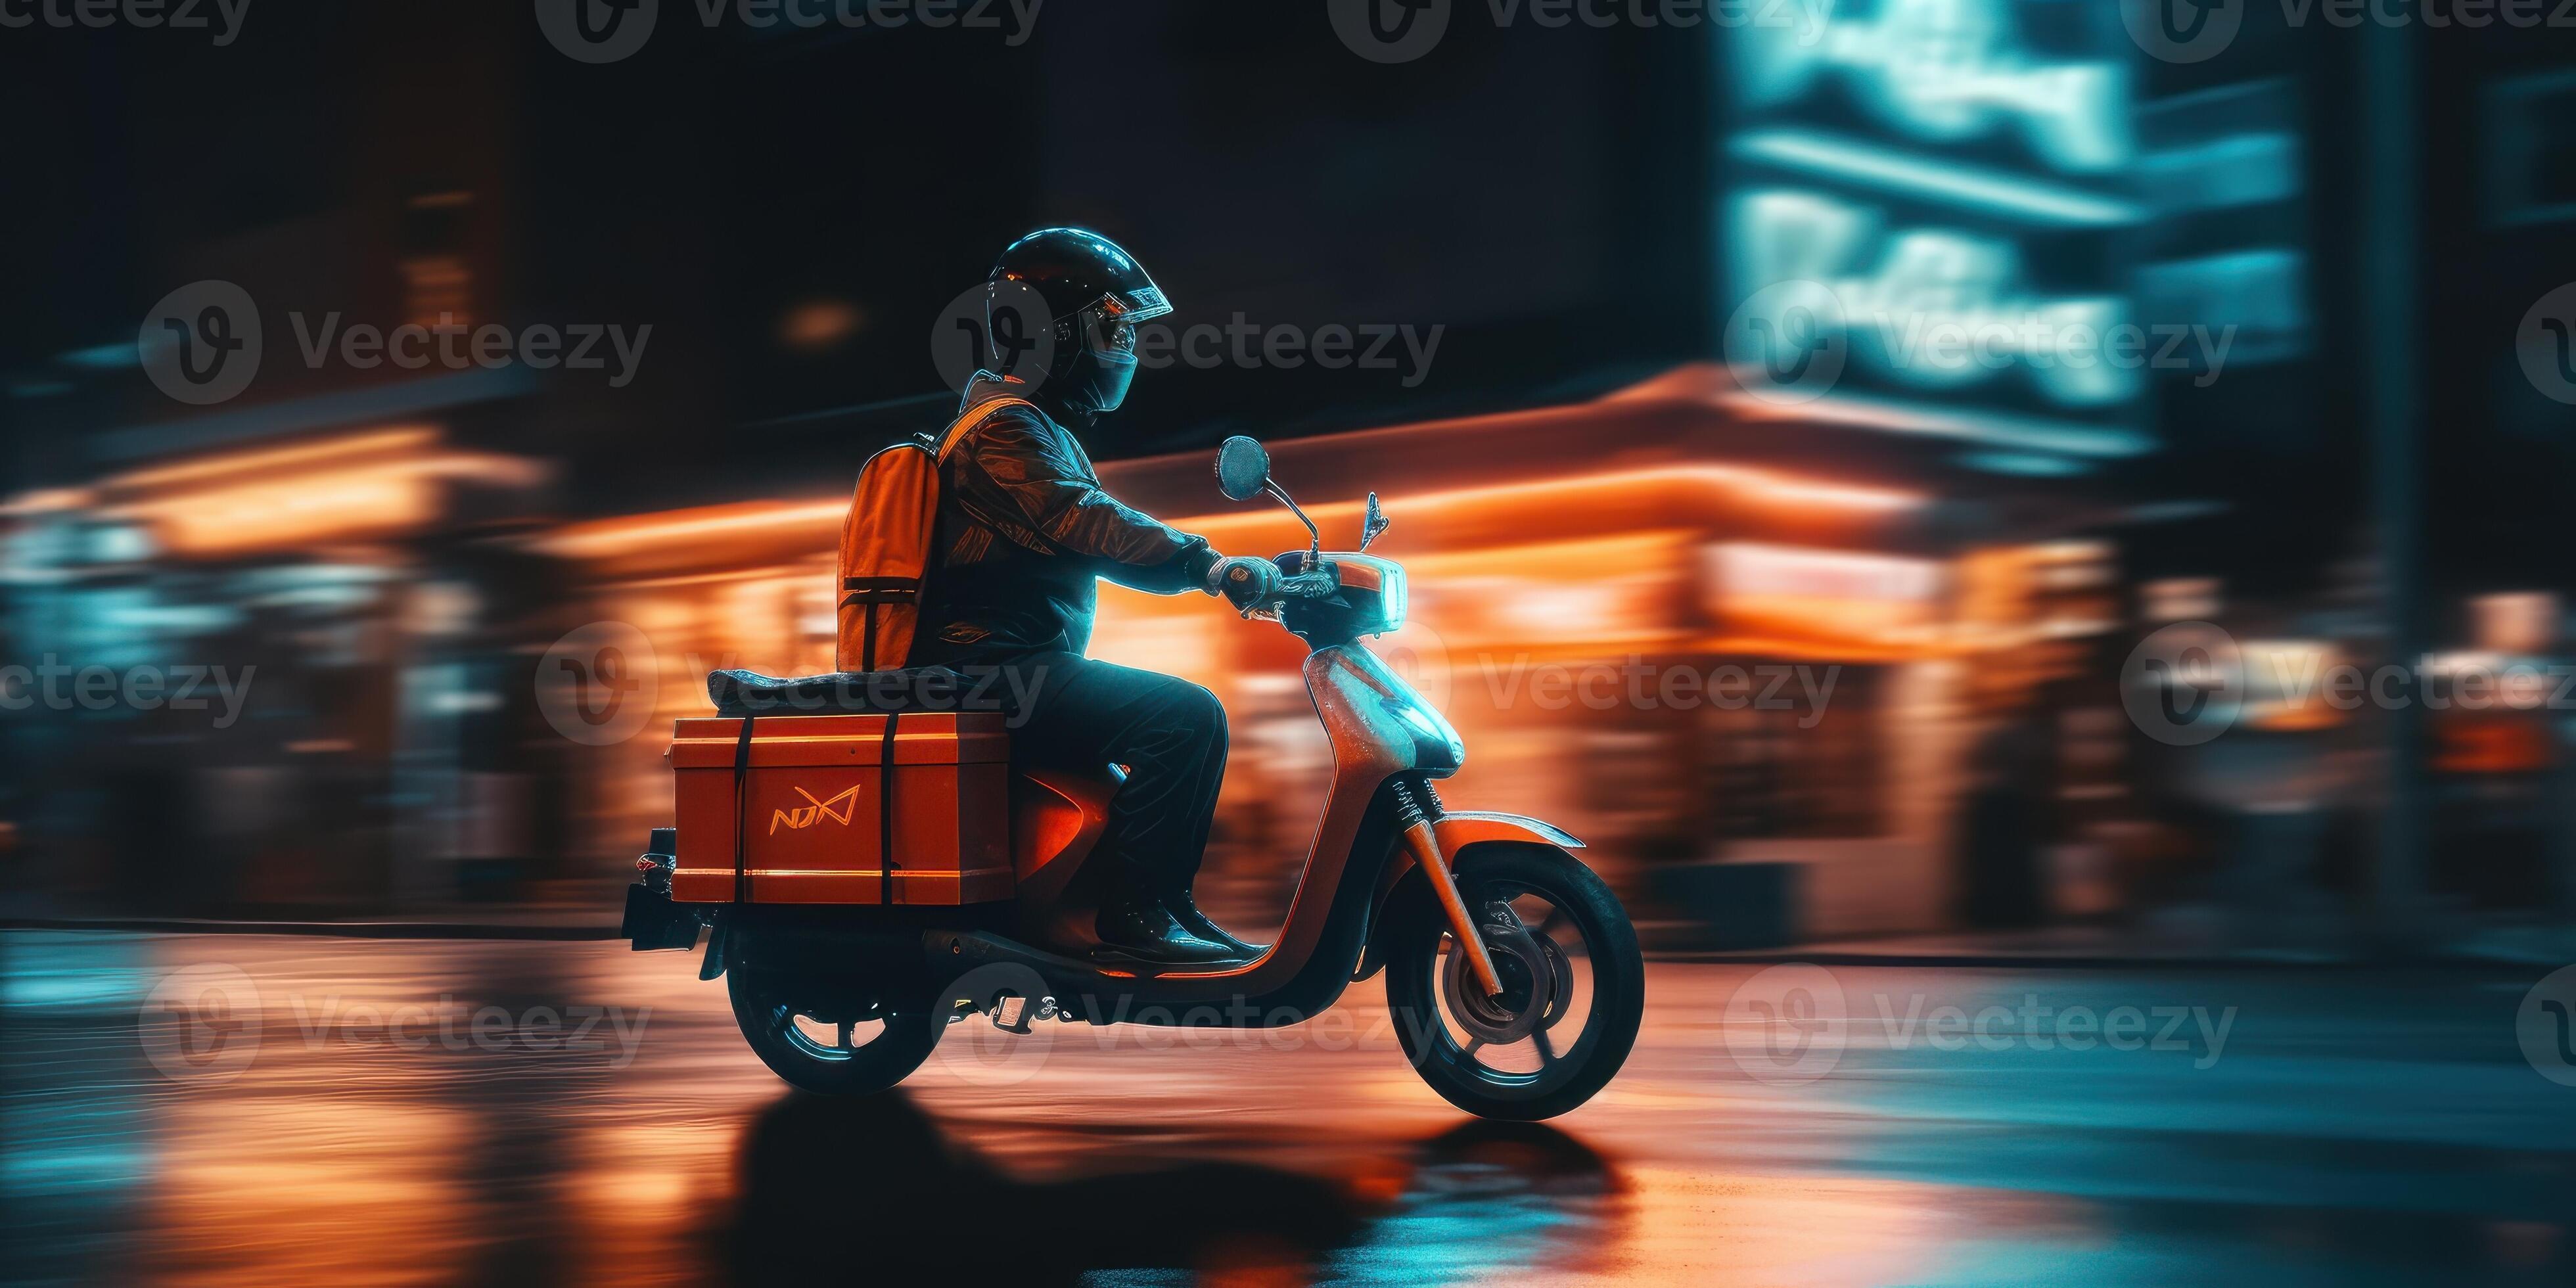 https://static.vecteezy.com/ti/photos-gratuite/p2/23379170-livraison-homme-balade-scooter-moto-a-nuit-avec-neon-lumieres-mouvement-brouiller-paysage-urbain-contexte-generatif-ai-photo.jpeg